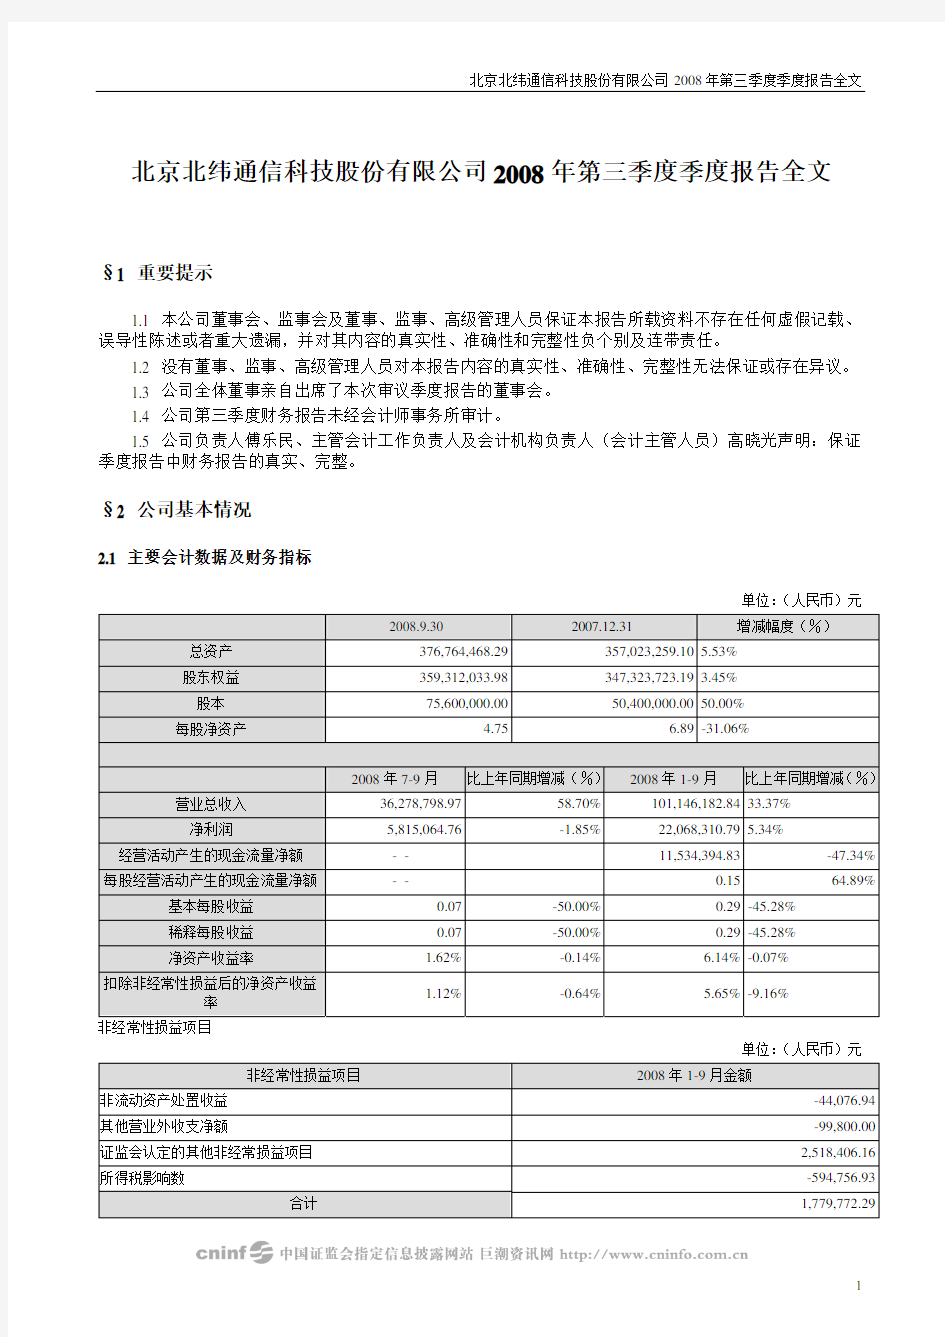 北京北纬通信科技股份有限公司2008年第三季度季度报告全文